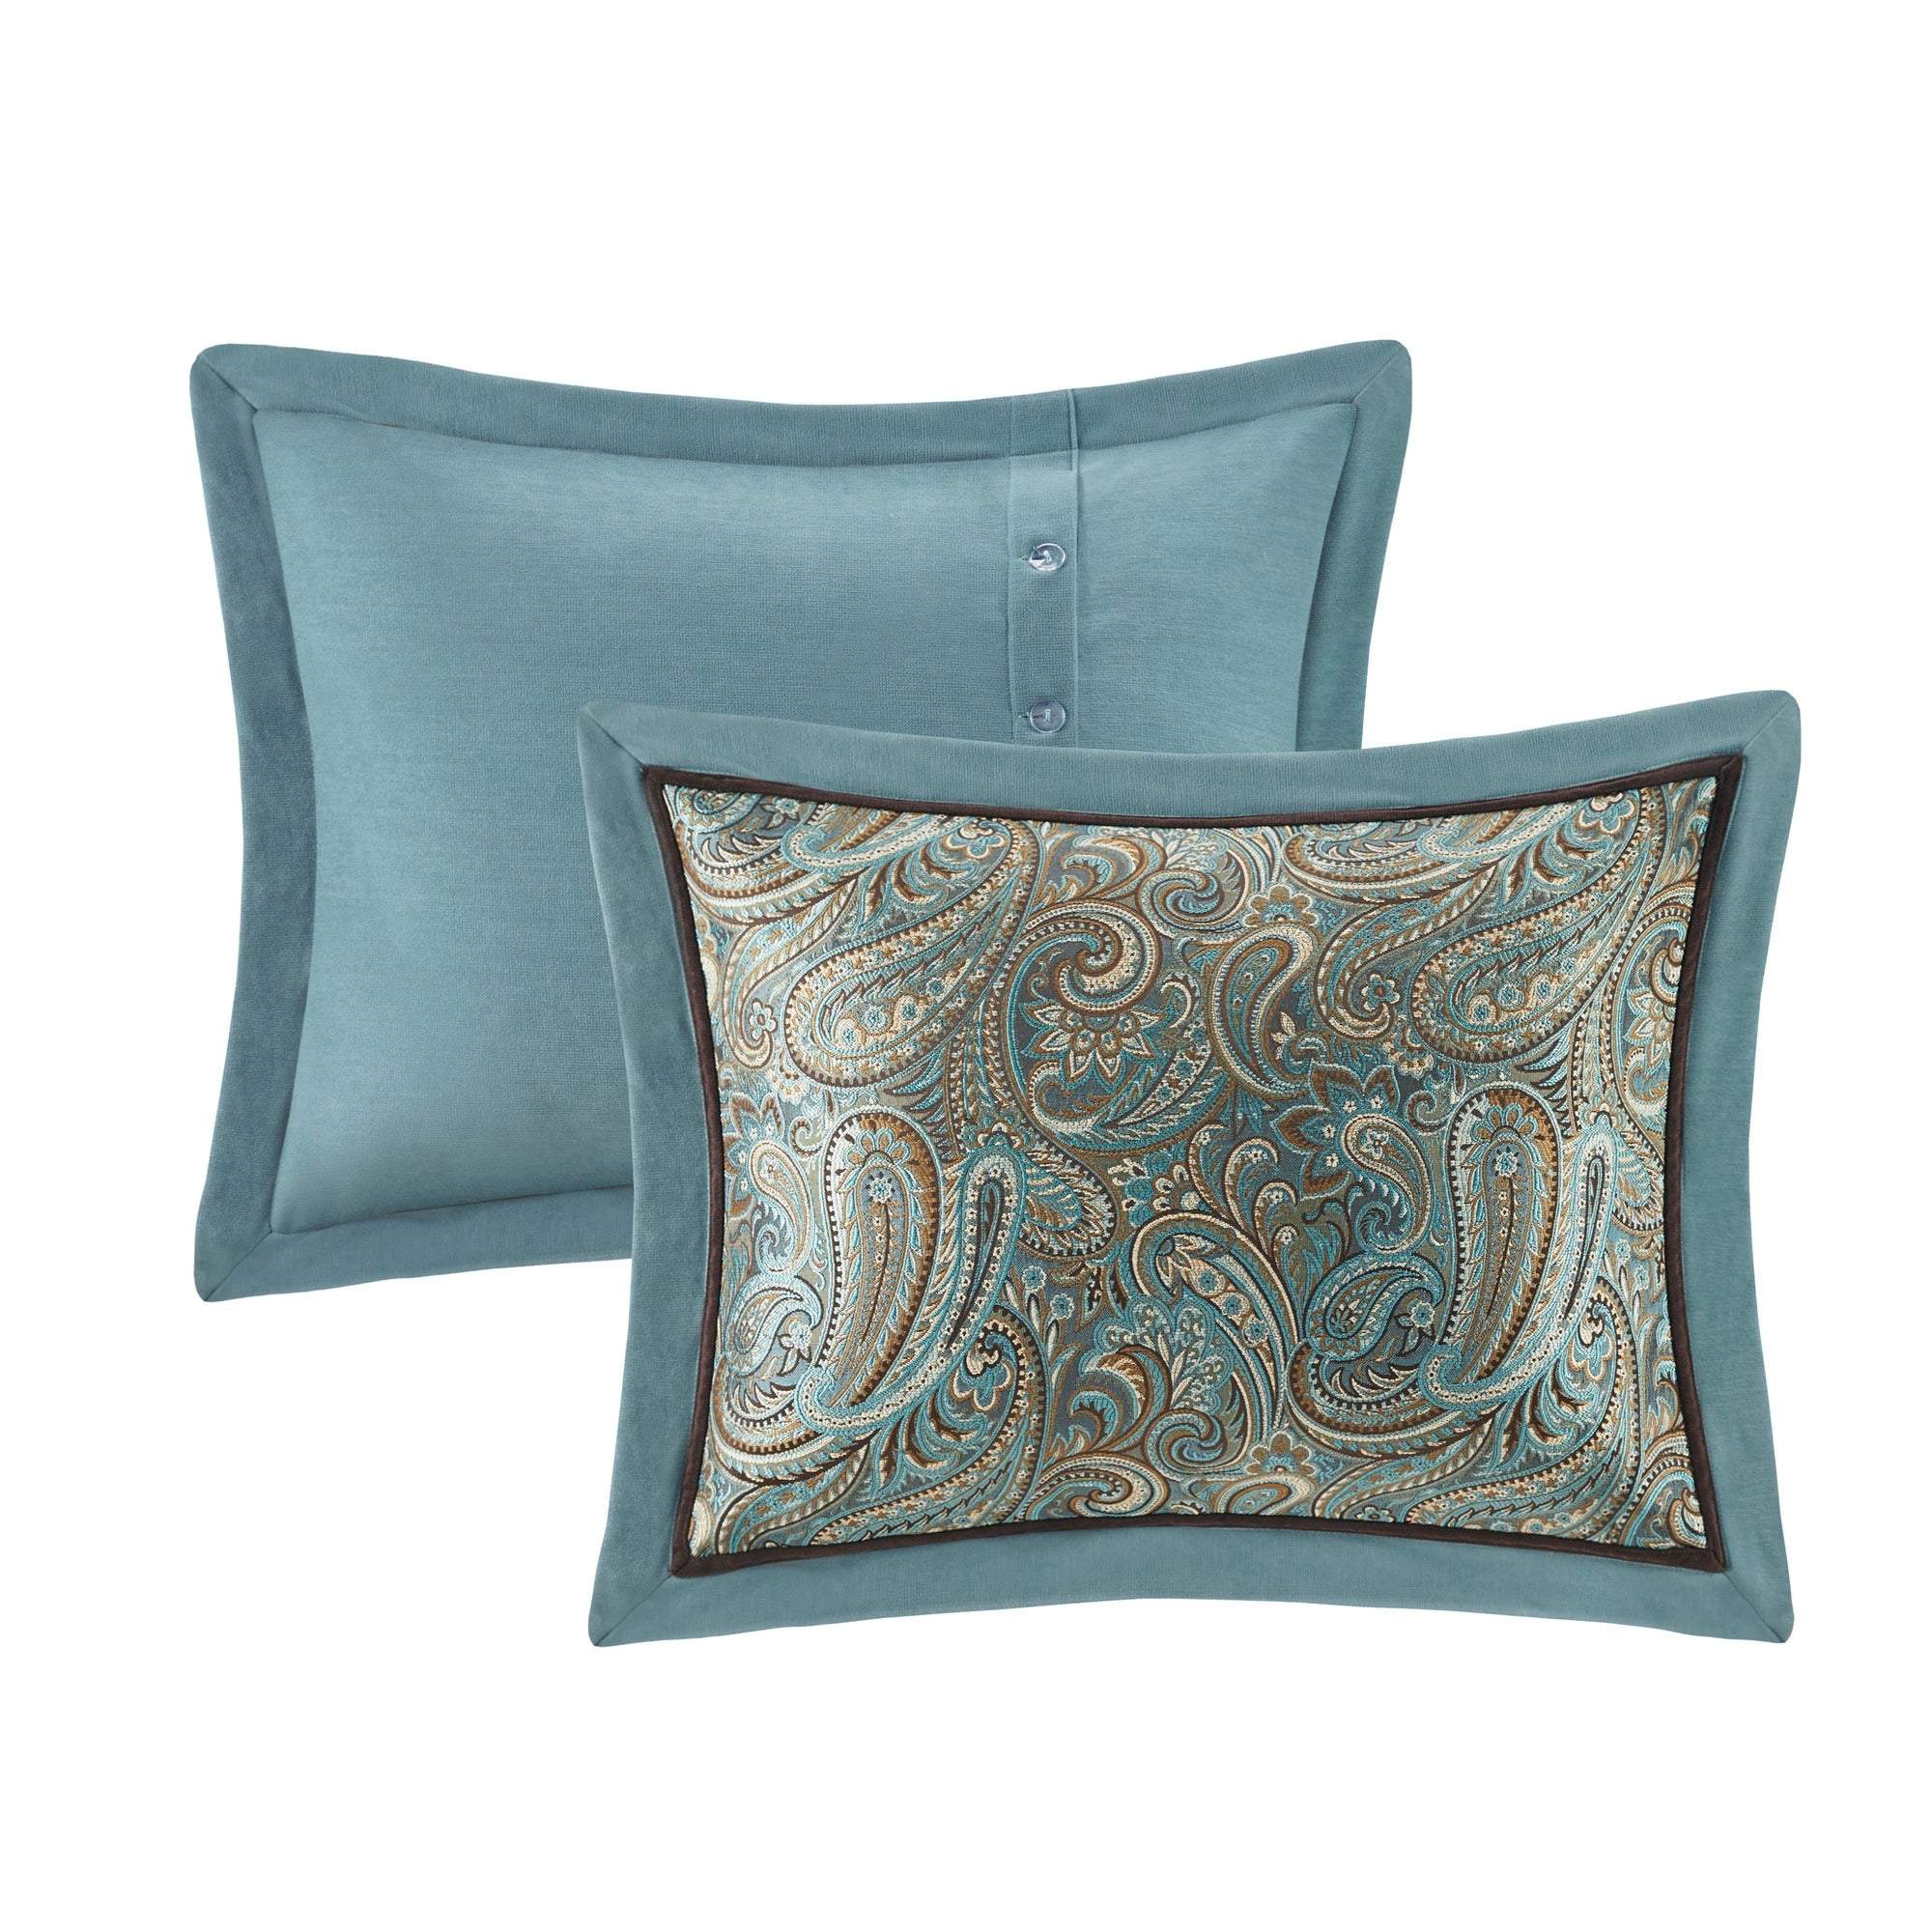 Lauren Blue 9-Piece Comforter Set Comforter Sets By Olliix/JLA HOME (E & E Co., Ltd)